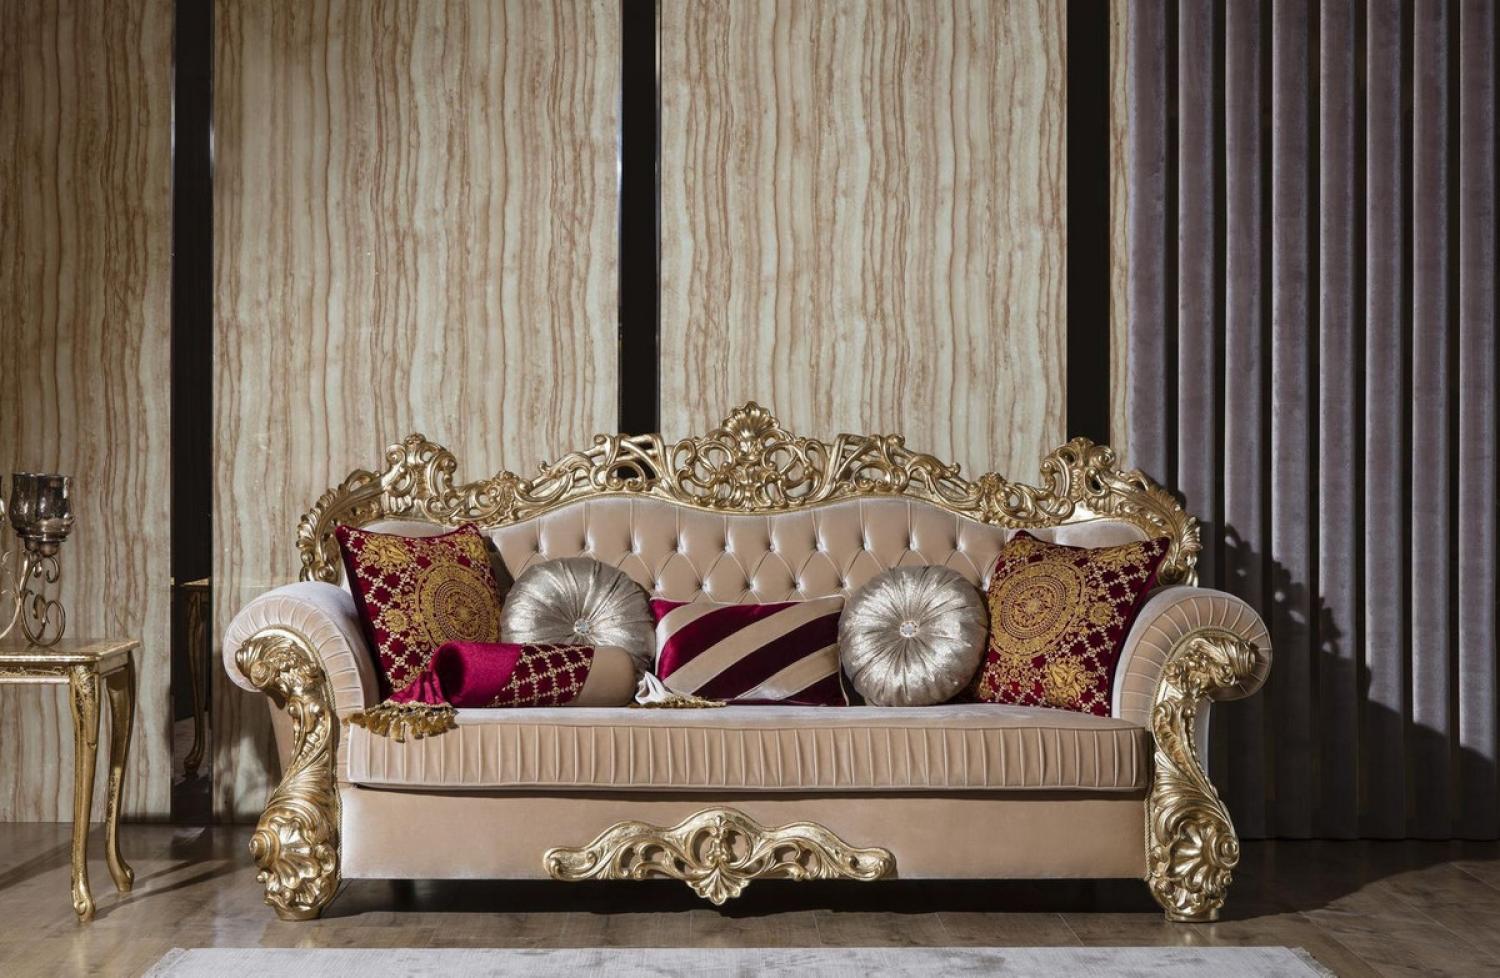 Casa Padrino Luxus Barock Sofa Beige / Gold 244 x 95 x H. 123 cm - Prunkvolles Wohnzimmer Sofa mit dekorativen Kissen - Barock Wohnzimmer Möbel Bild 1